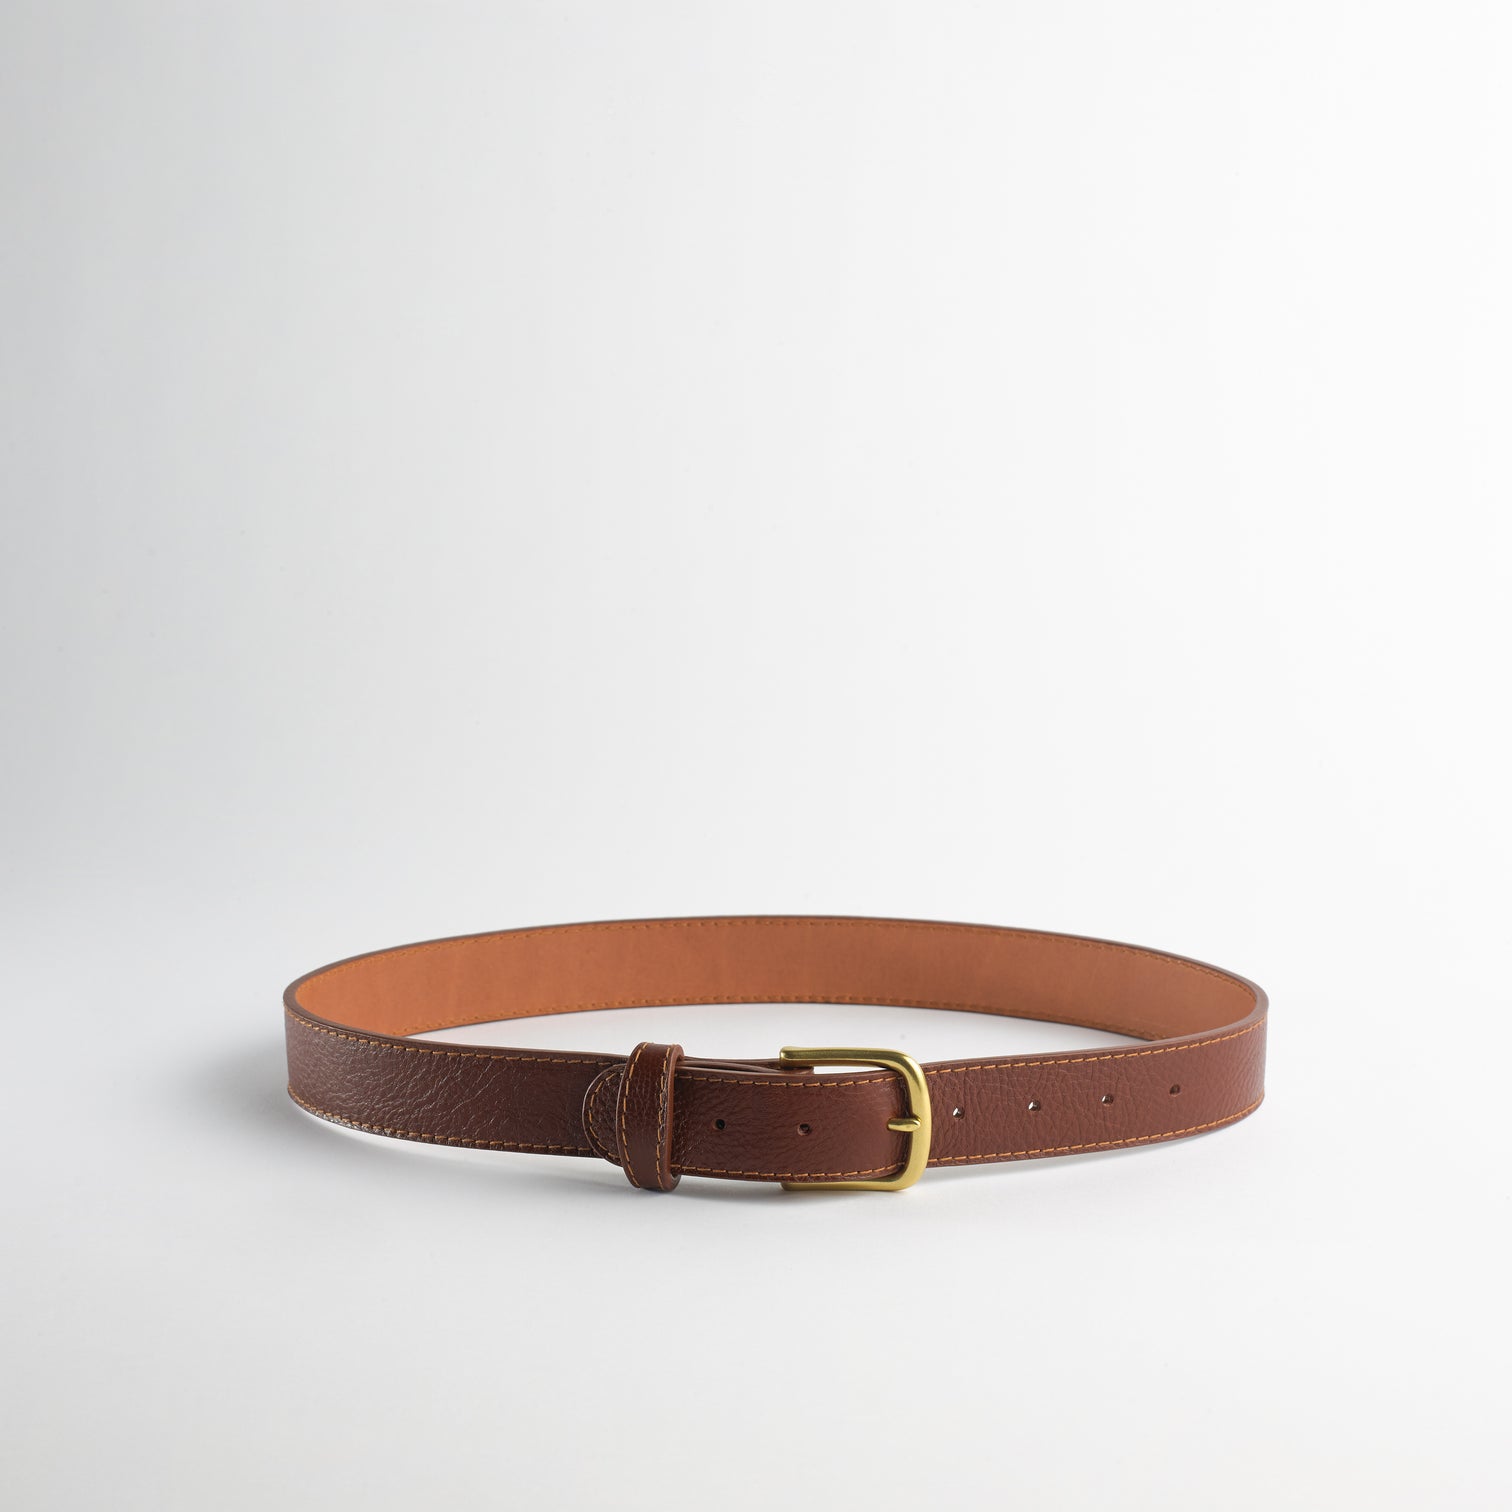 SIMPLE BELT II - Full Grain Leather Belt